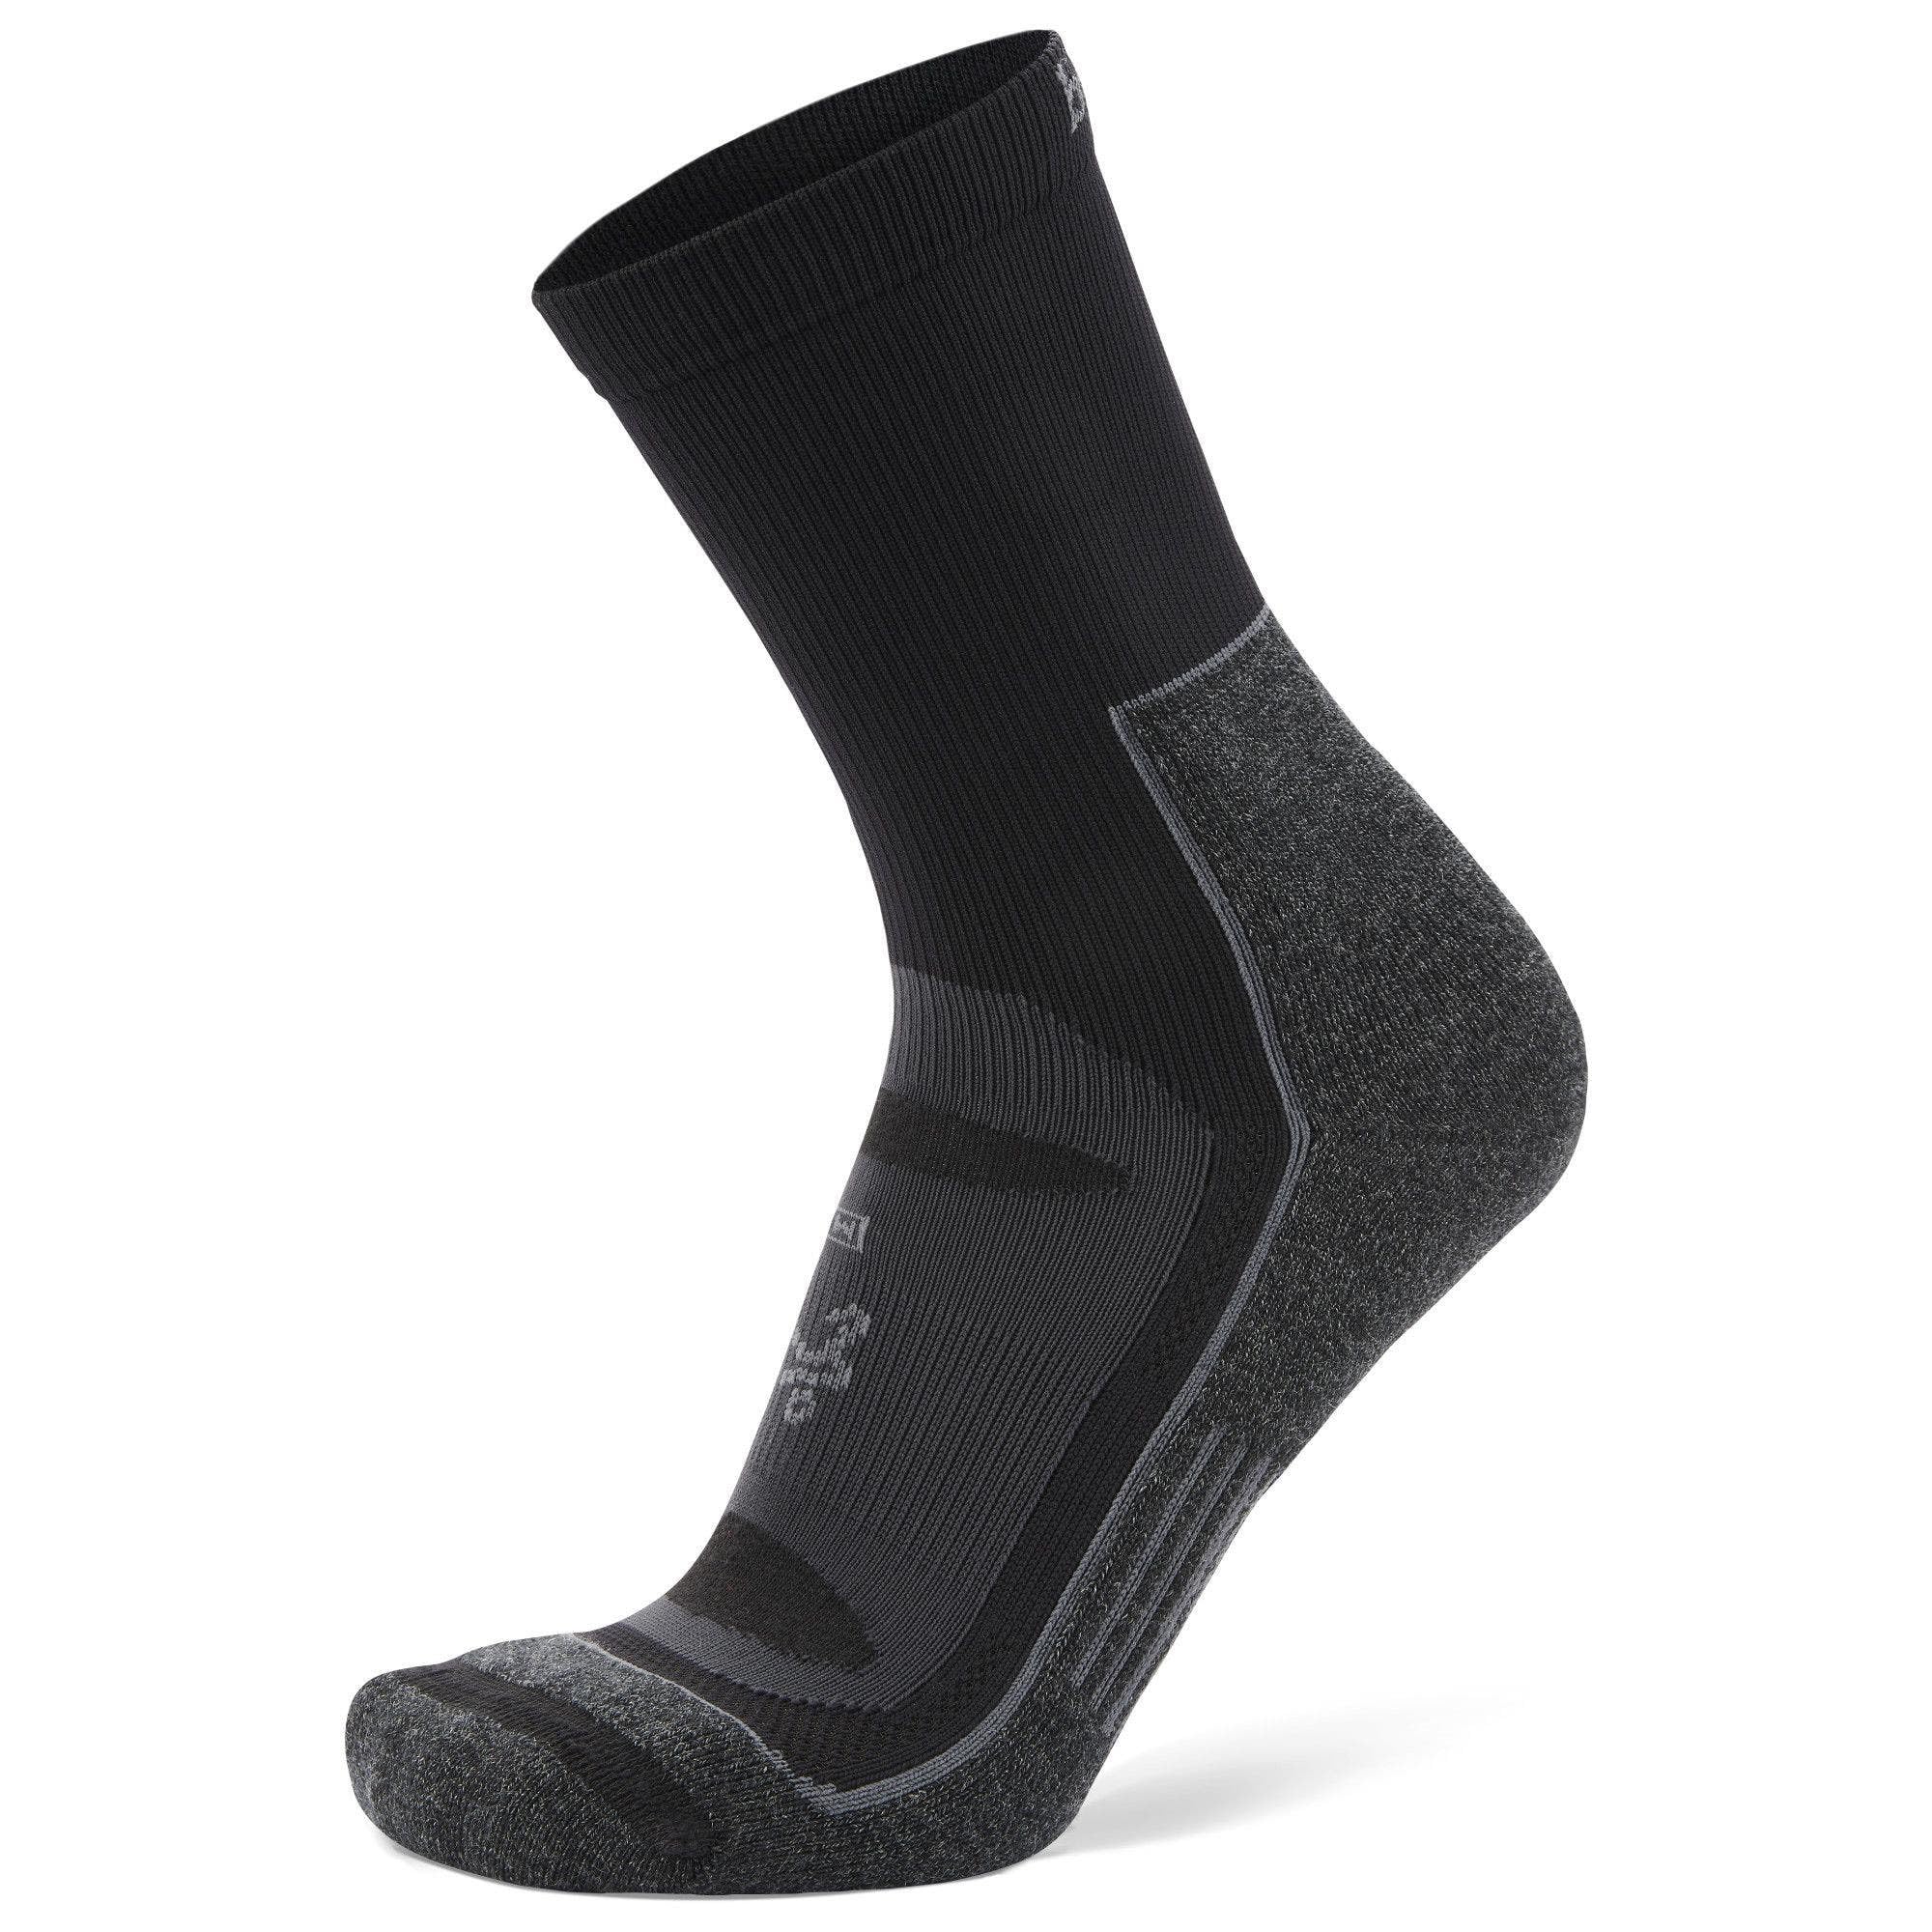 Balega Blister Resist Performance Crew Athletic Running Socks for Men and Women (1 Pair)